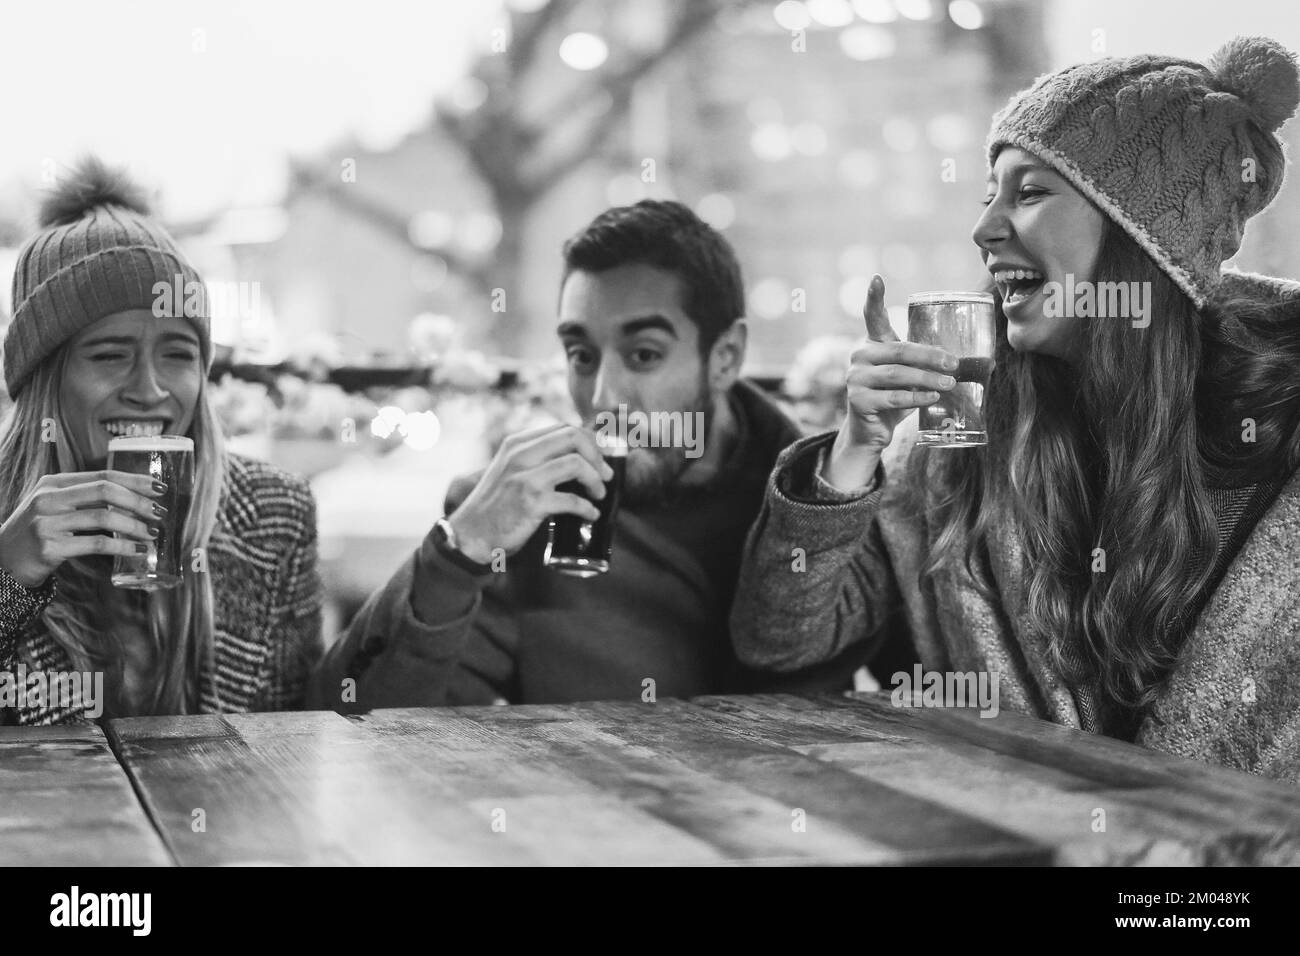 Junge Leute, die Spaß beim Trinken von Bier im Pub-Restaurant haben - weicher Fokus auf den richtigen Mädchenhut - Schwarz-Weiß-Schnitt Stockfoto